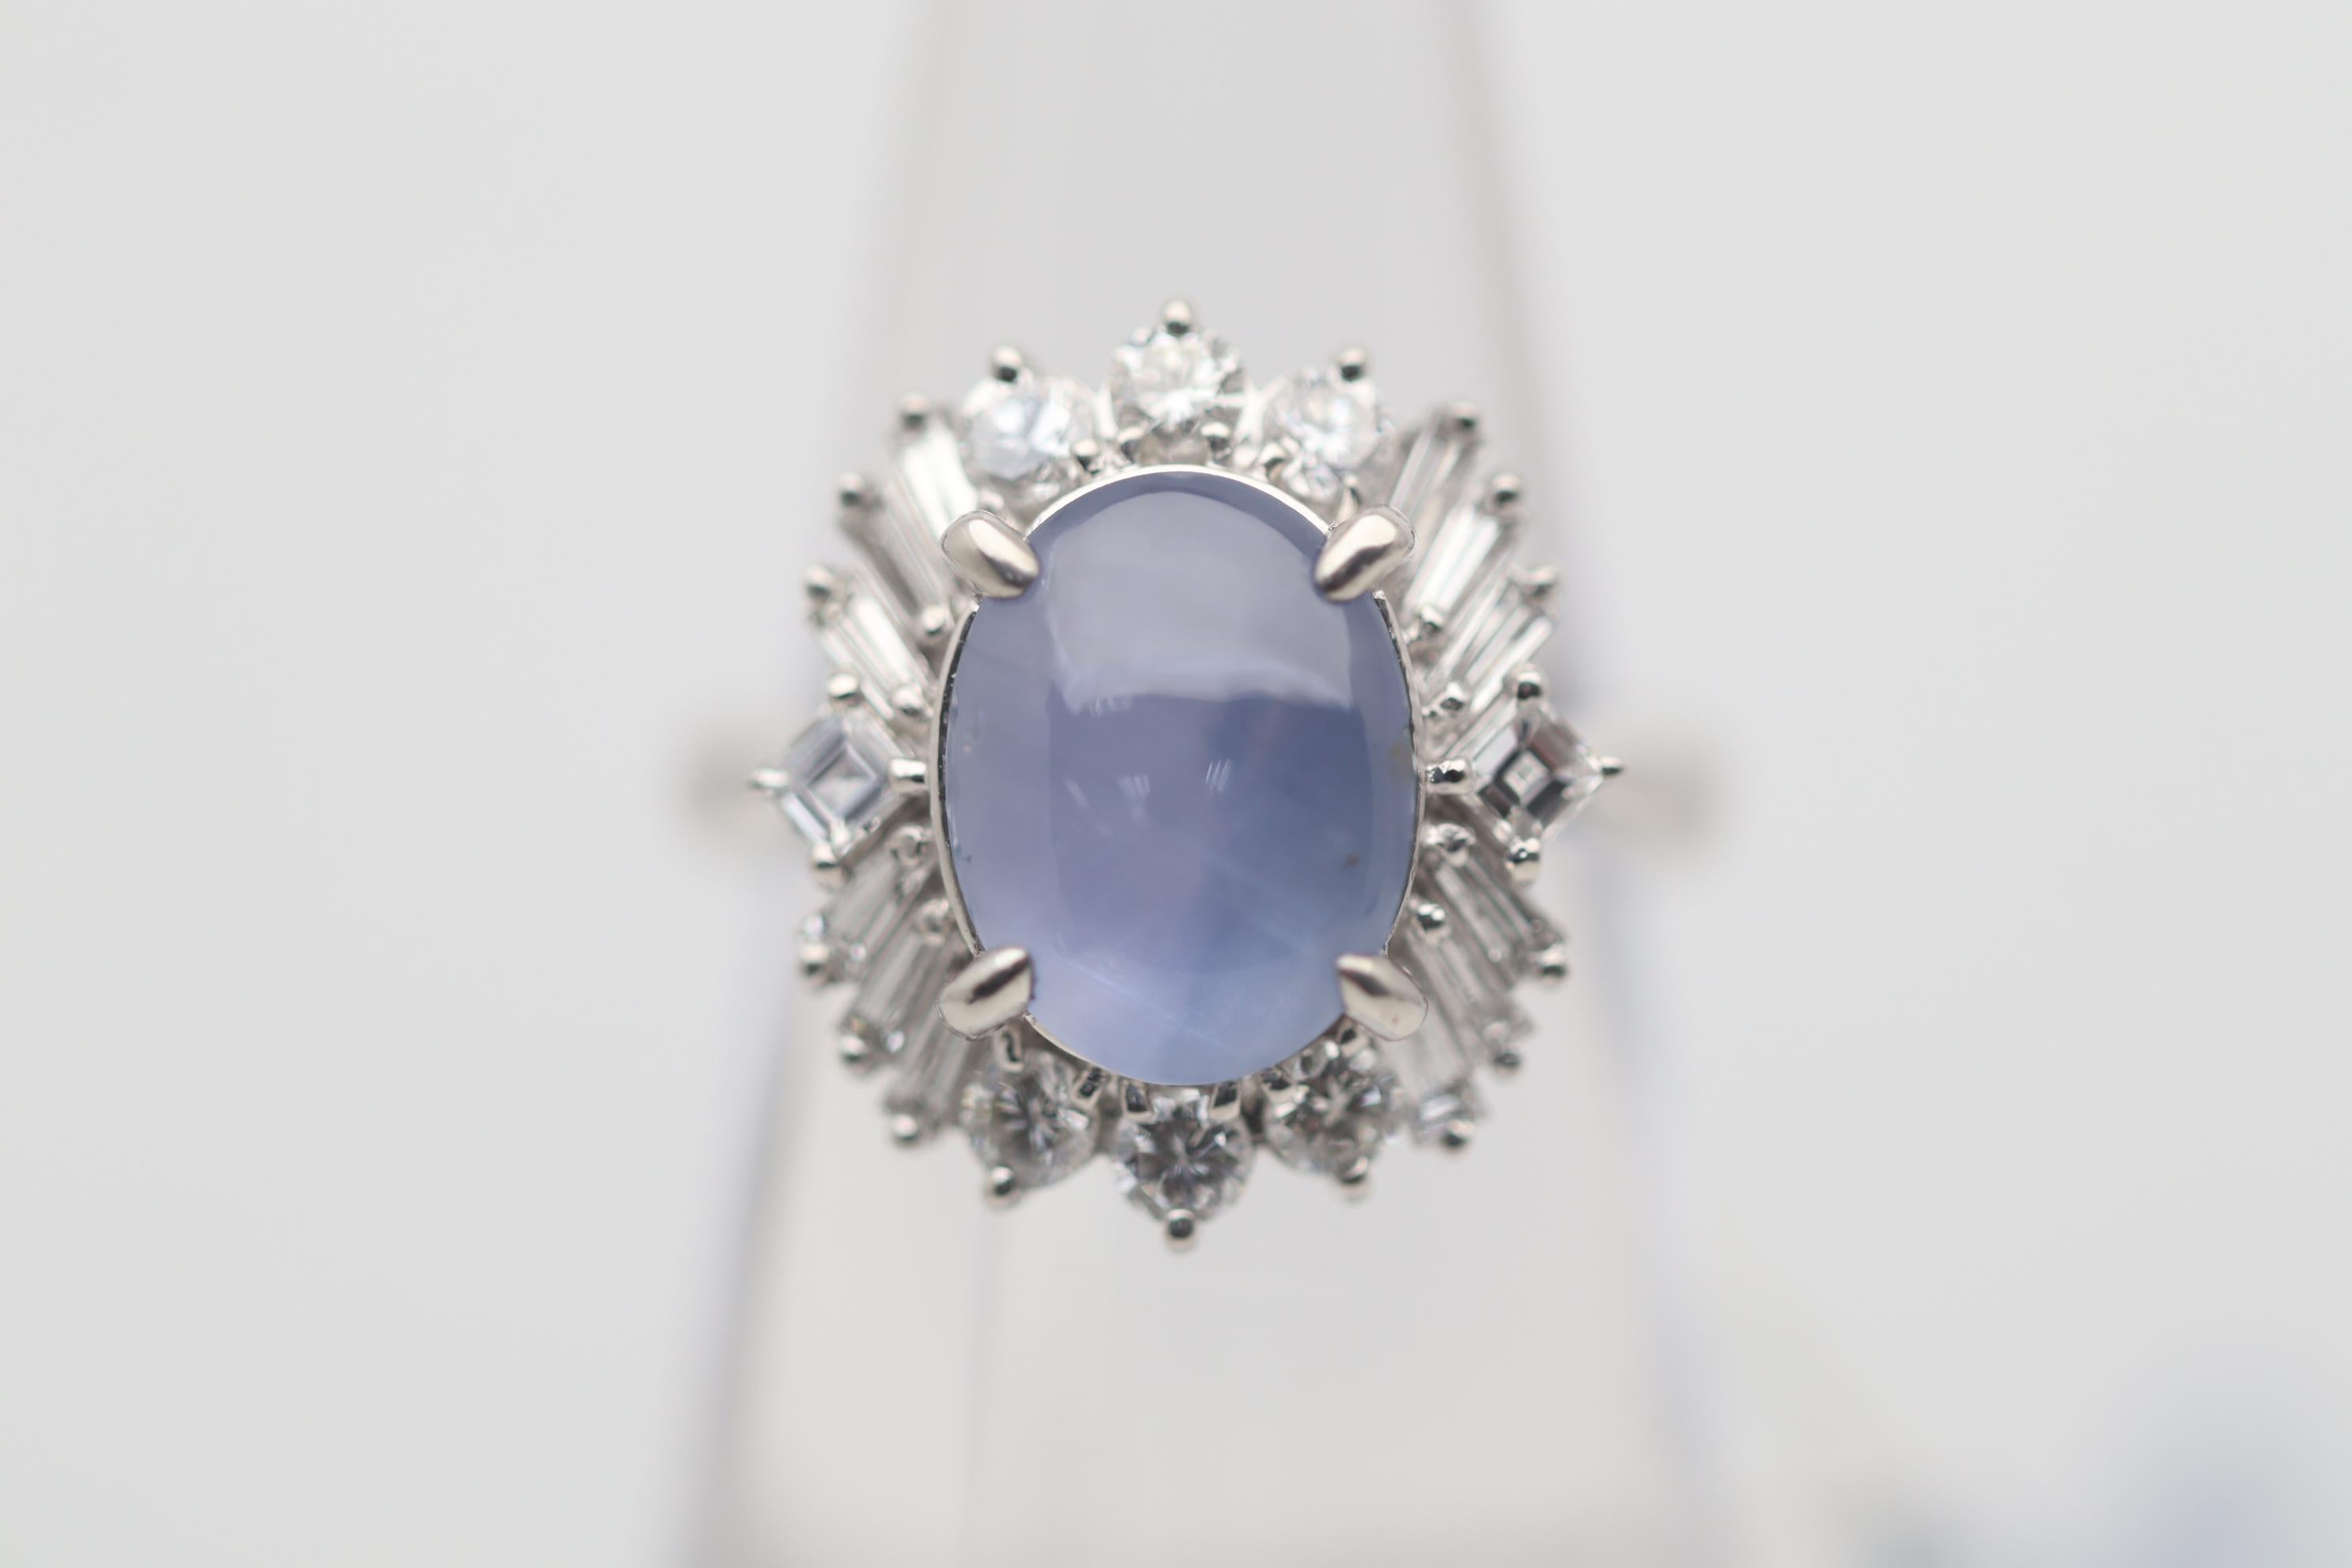 Une bague élégante et brillante ornée d'un saphir étoilé de 6,00 carats. Elle a une couleur bleue douce et uniforme et une forte étoile à 6 rayons lorsqu'une lumière frappe son sommet. Le saphir est ébloui par une variété de diamants de forme